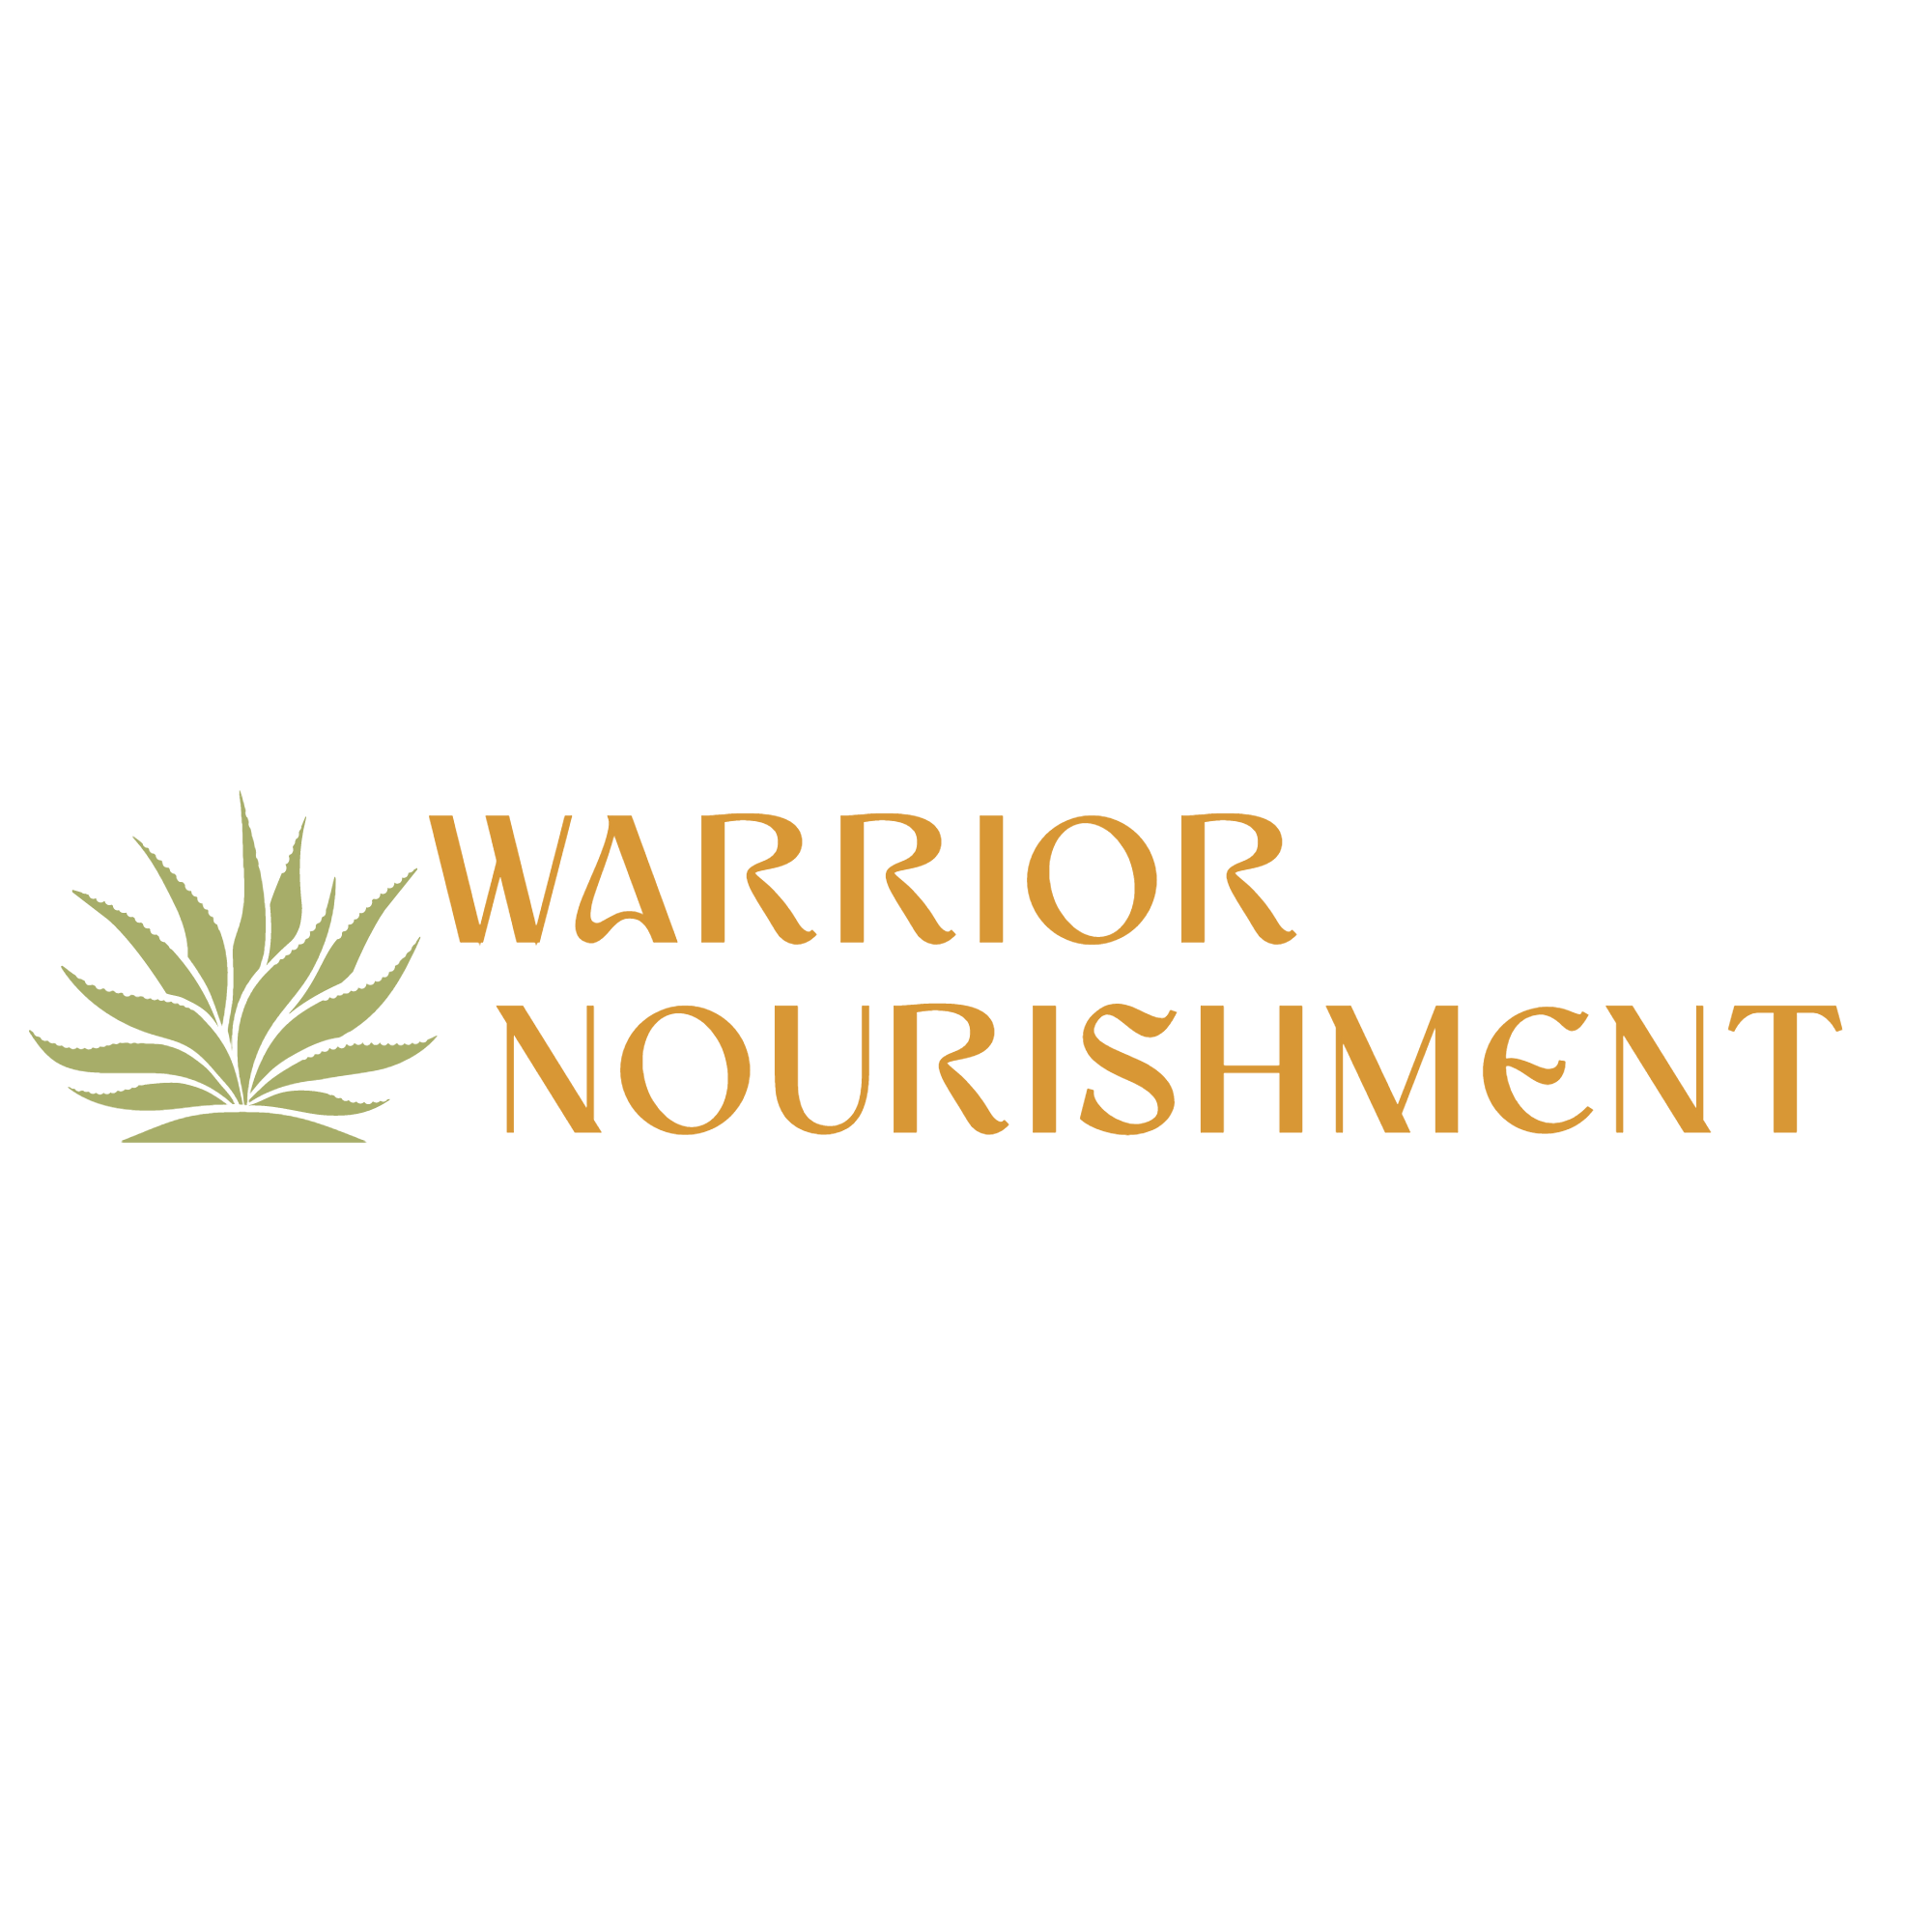 Warrior Nourishment